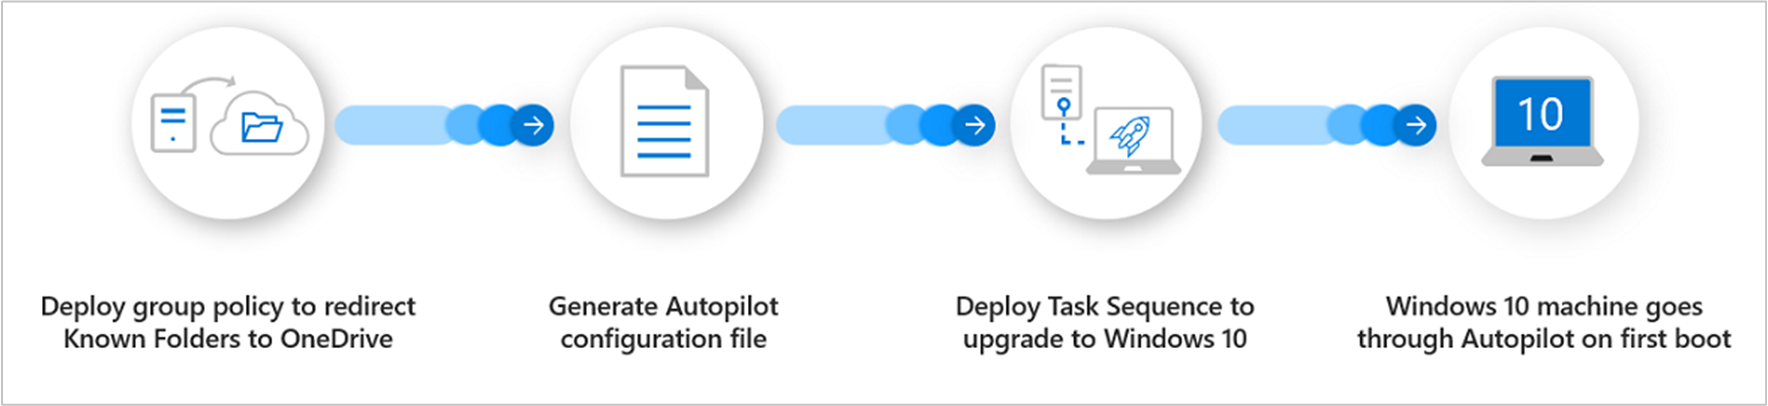 Información general sobre los procesos para Windows Autopilot para dispositivos existentes